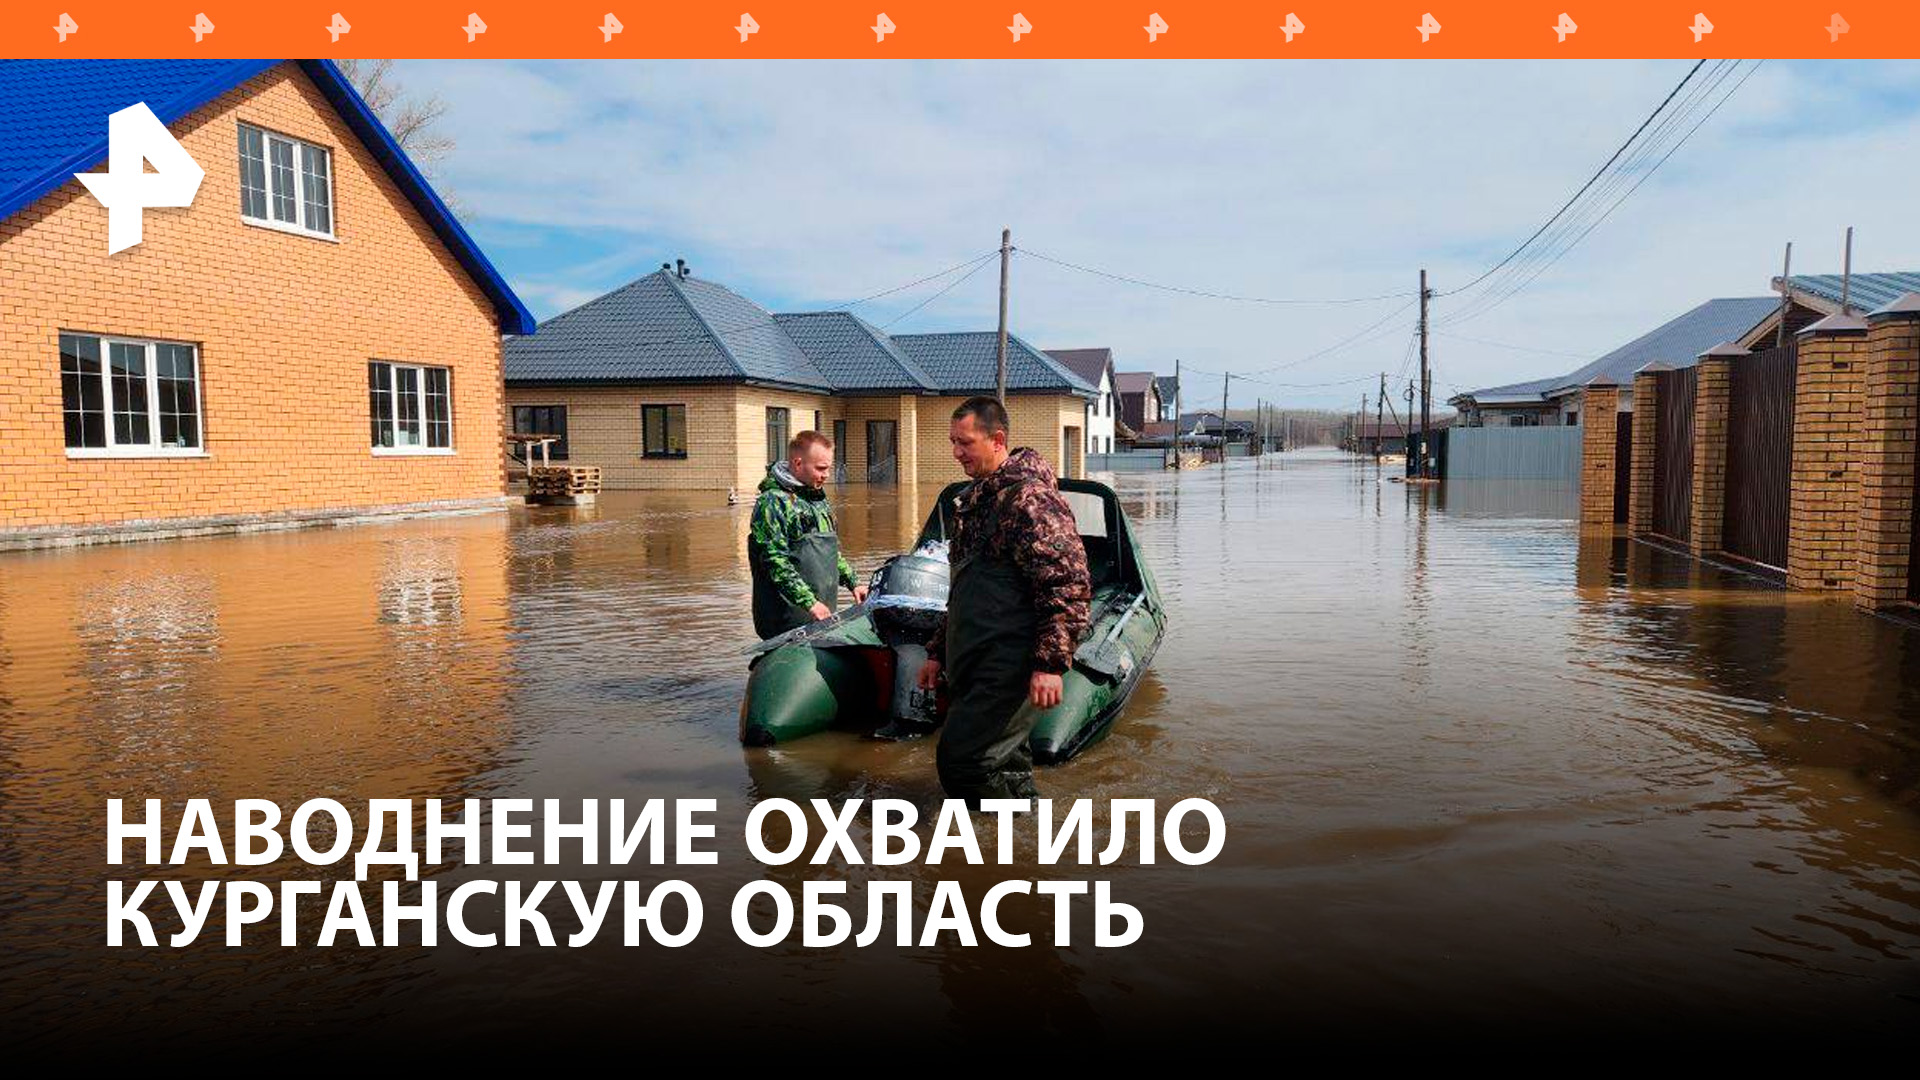 Жителей юга Курганской области эвакуируют из-за паводка / РЕН Новости